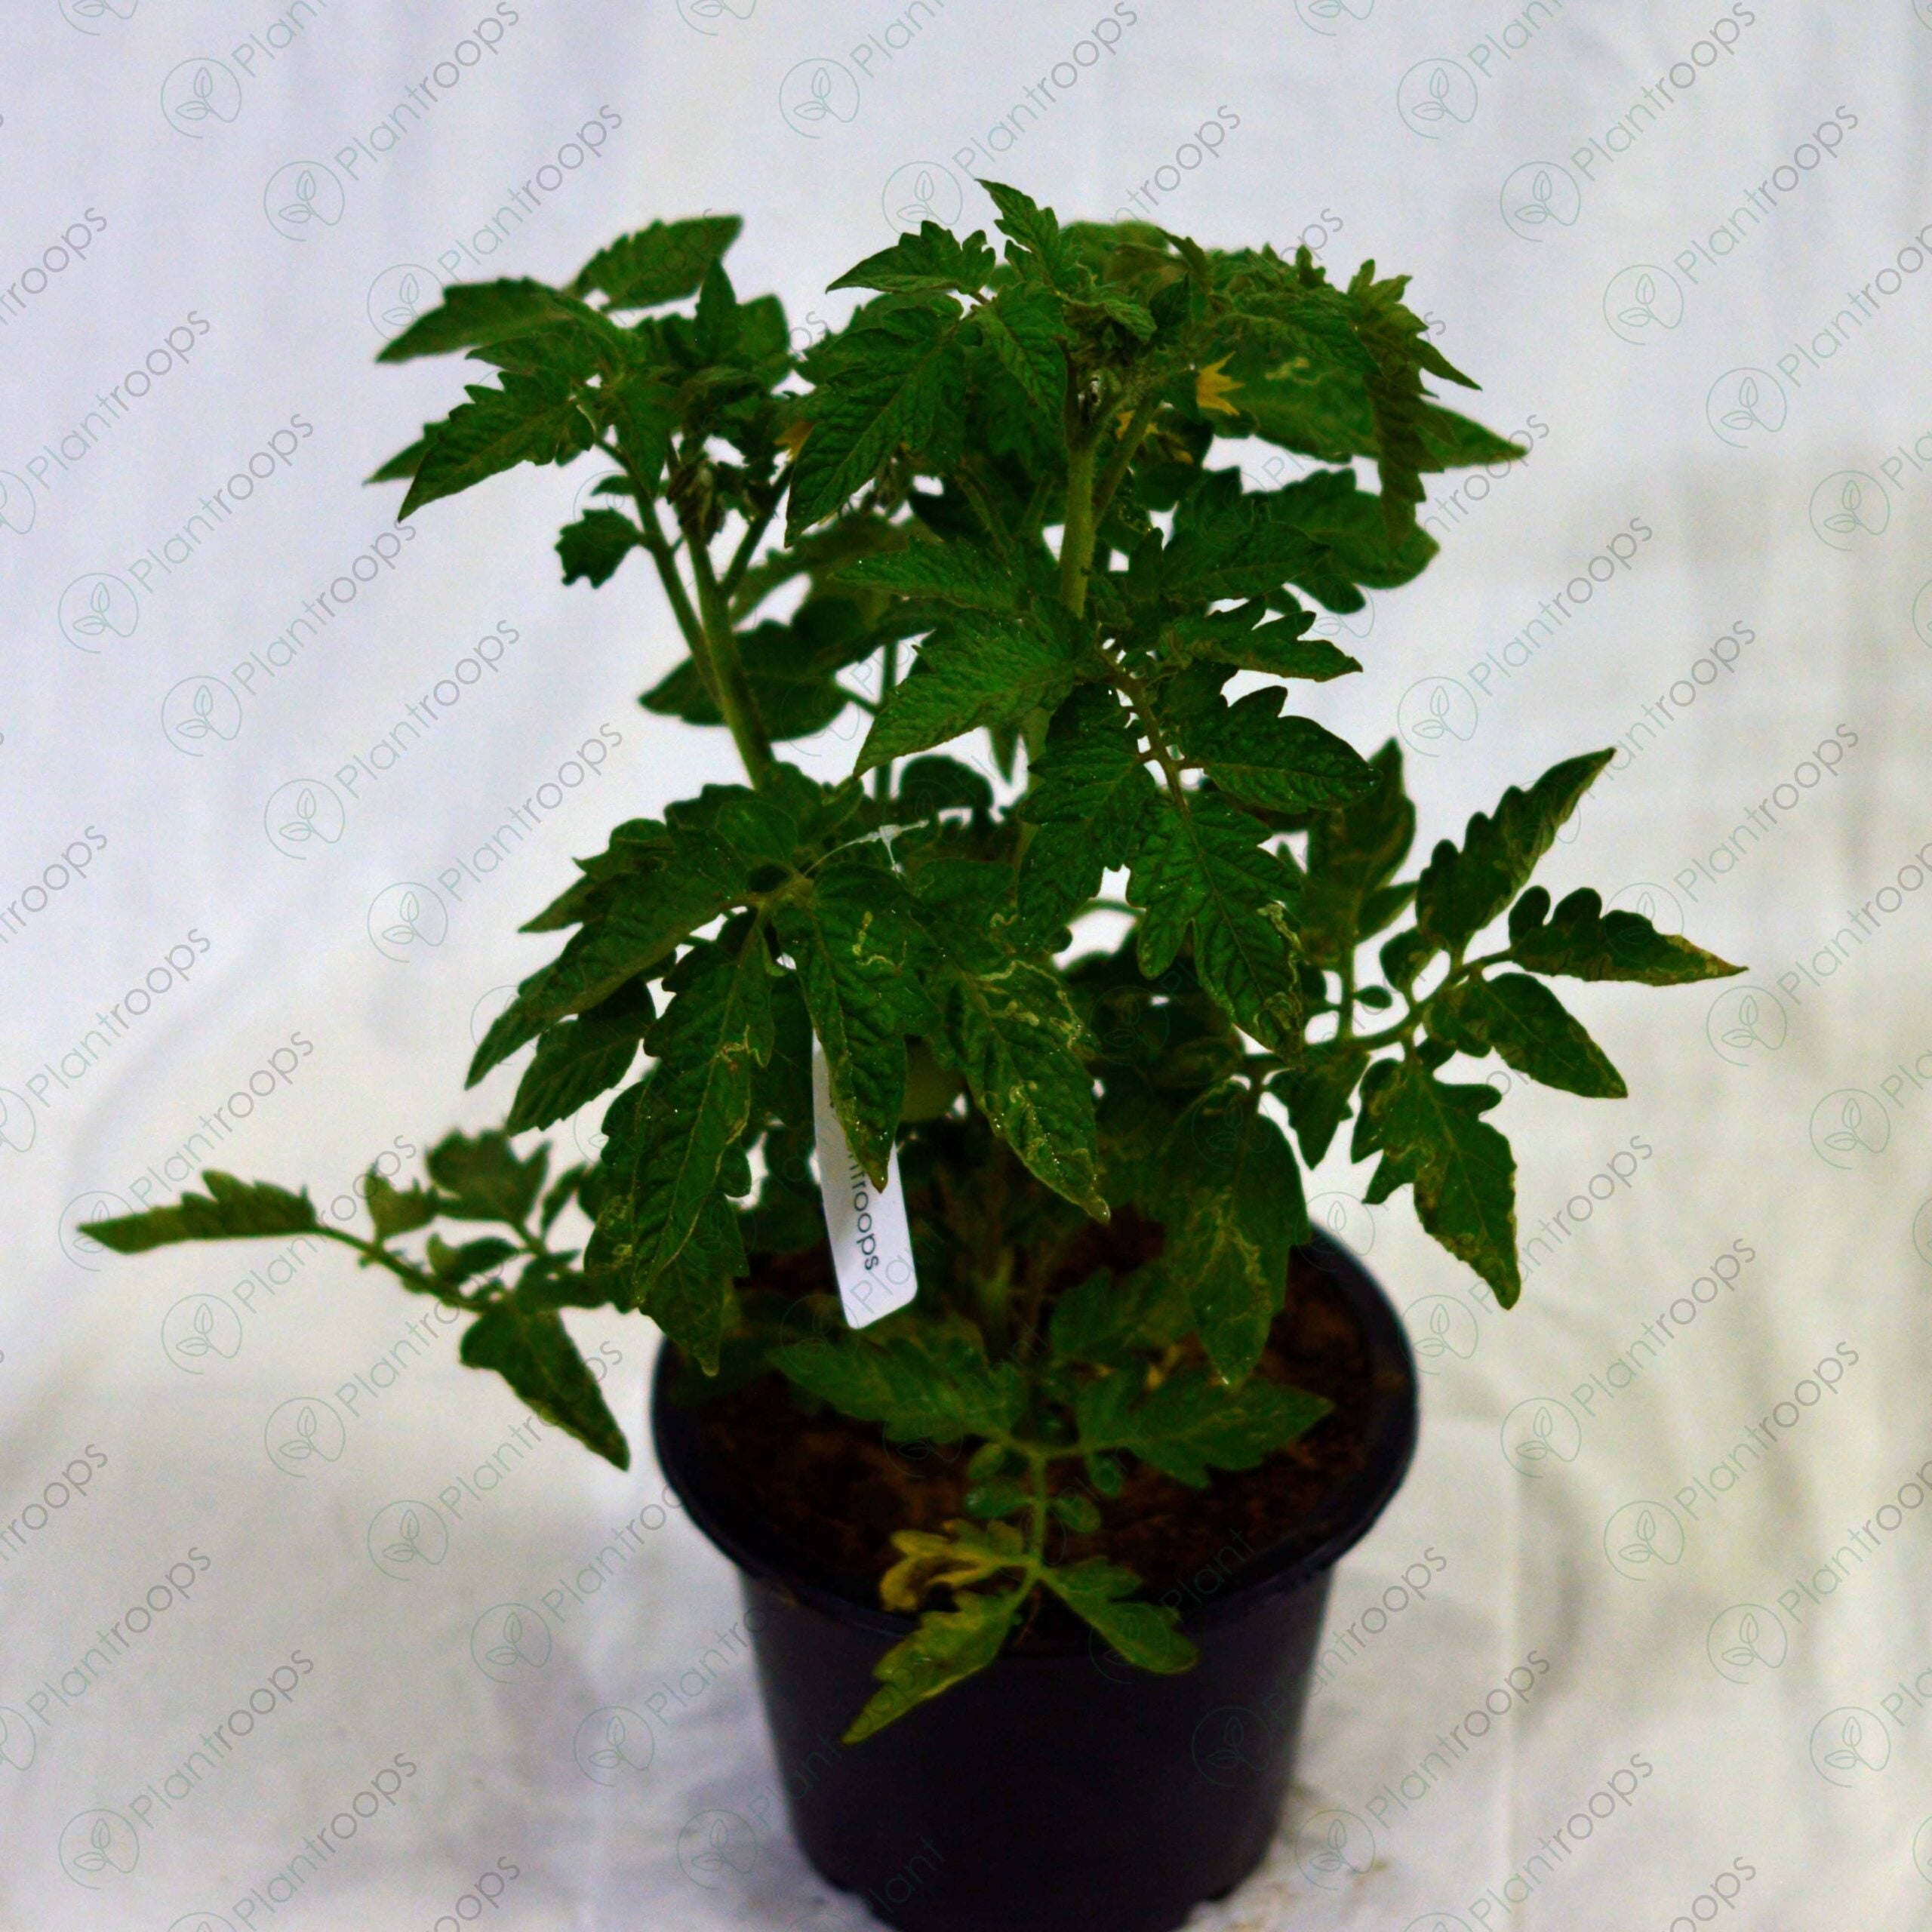 F1 Hybrid Tomato Plant